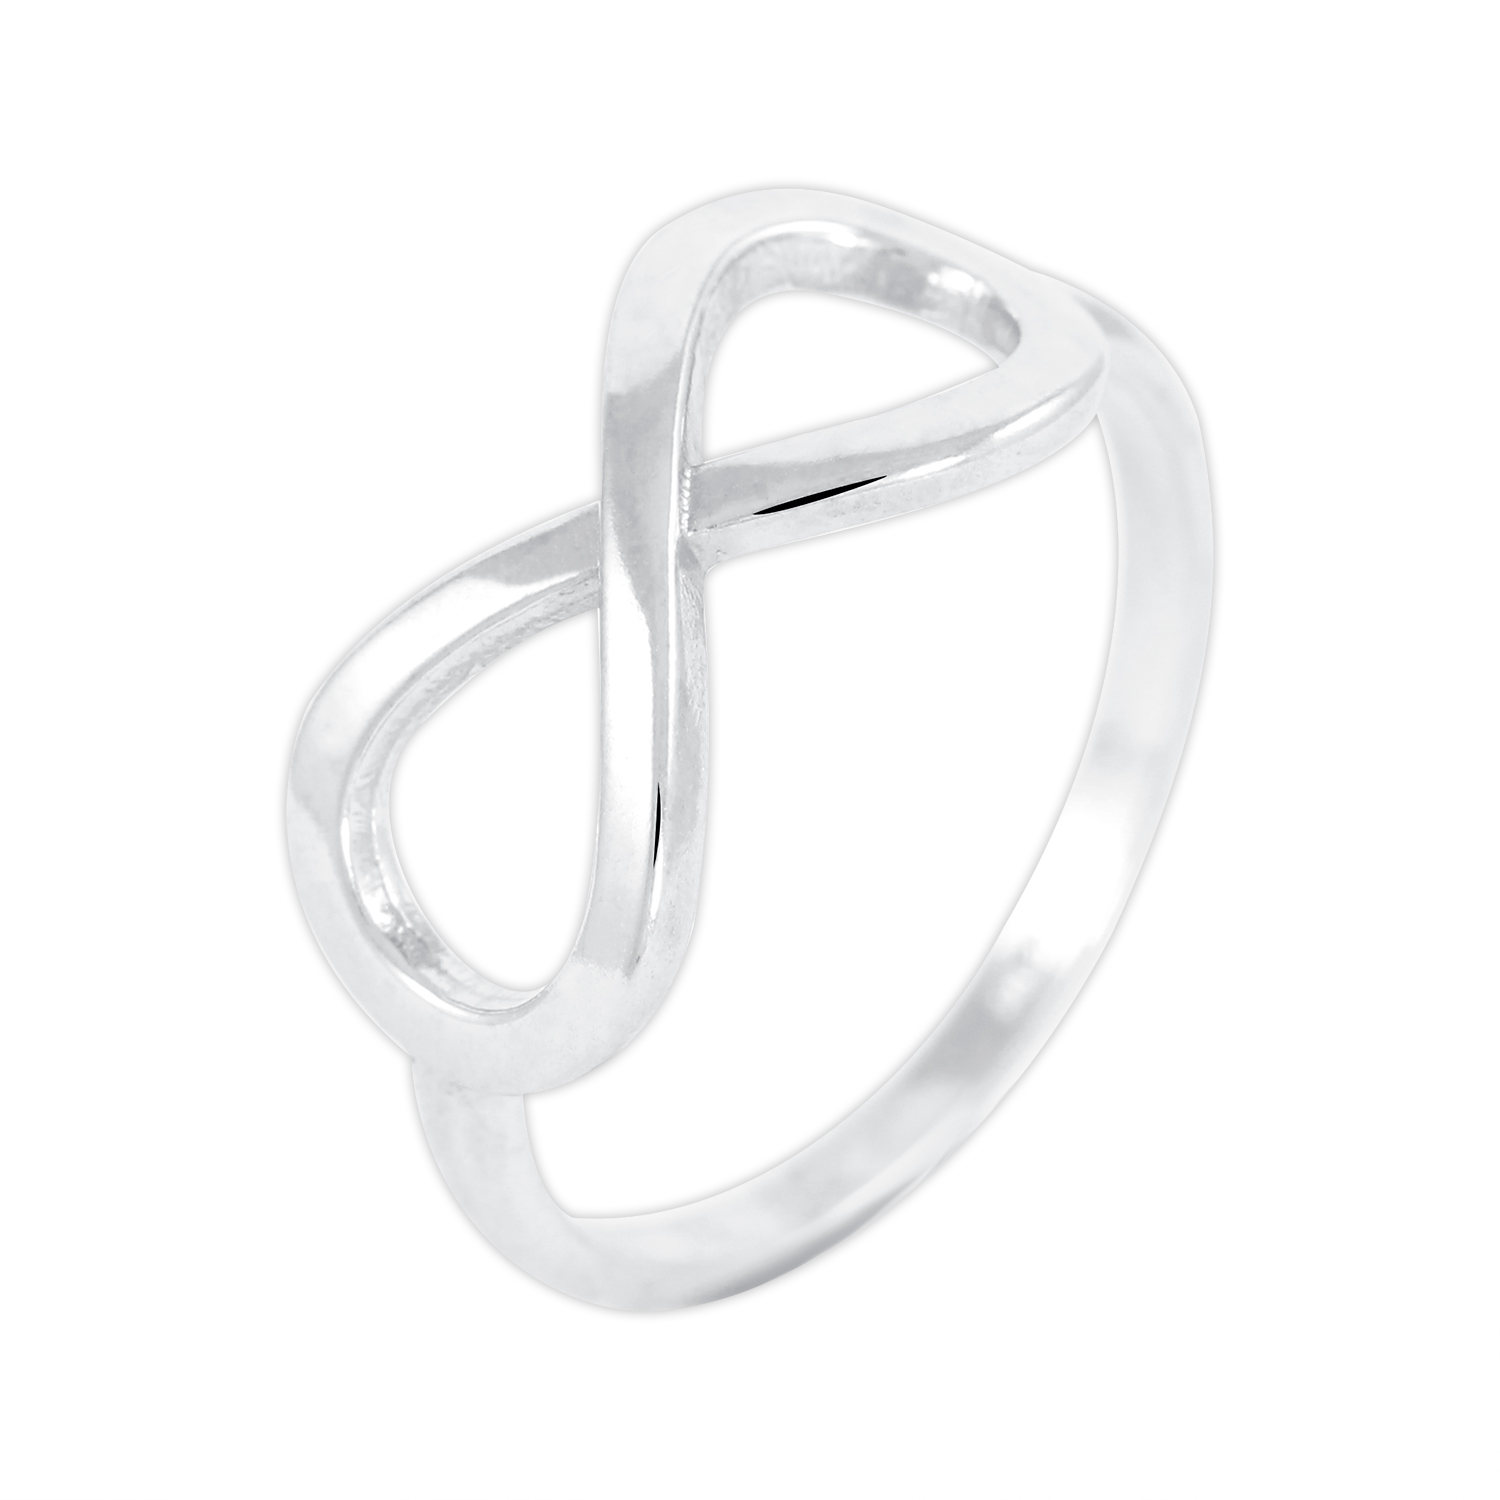 Brilio Silver Módní stříbrný prsten Nekonečno 421 001 01662 04 55 mm